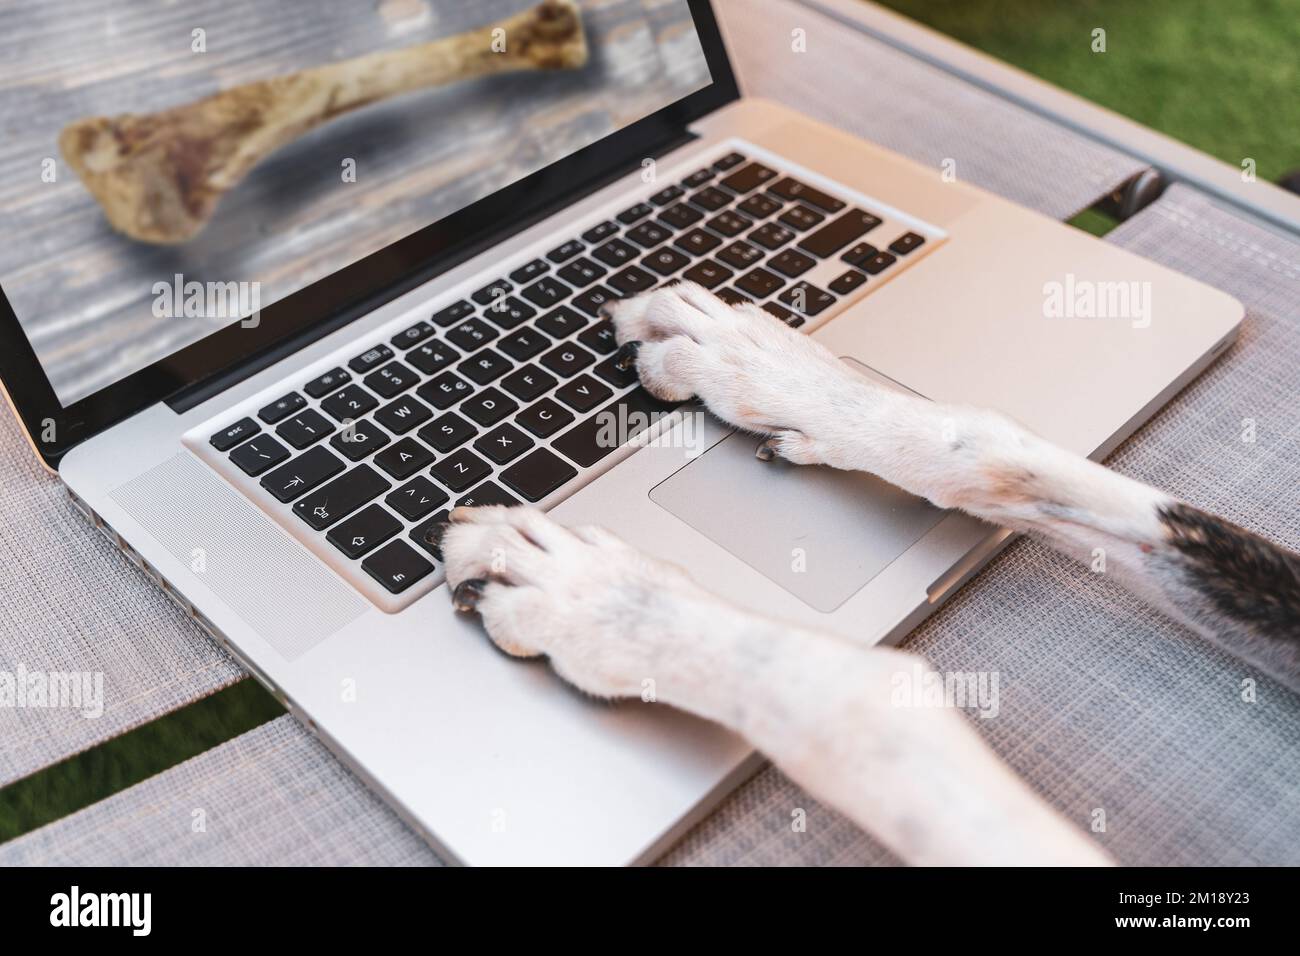 un cane che guarda un'immagine di un osso su un monitor di computer all'aperto Foto Stock